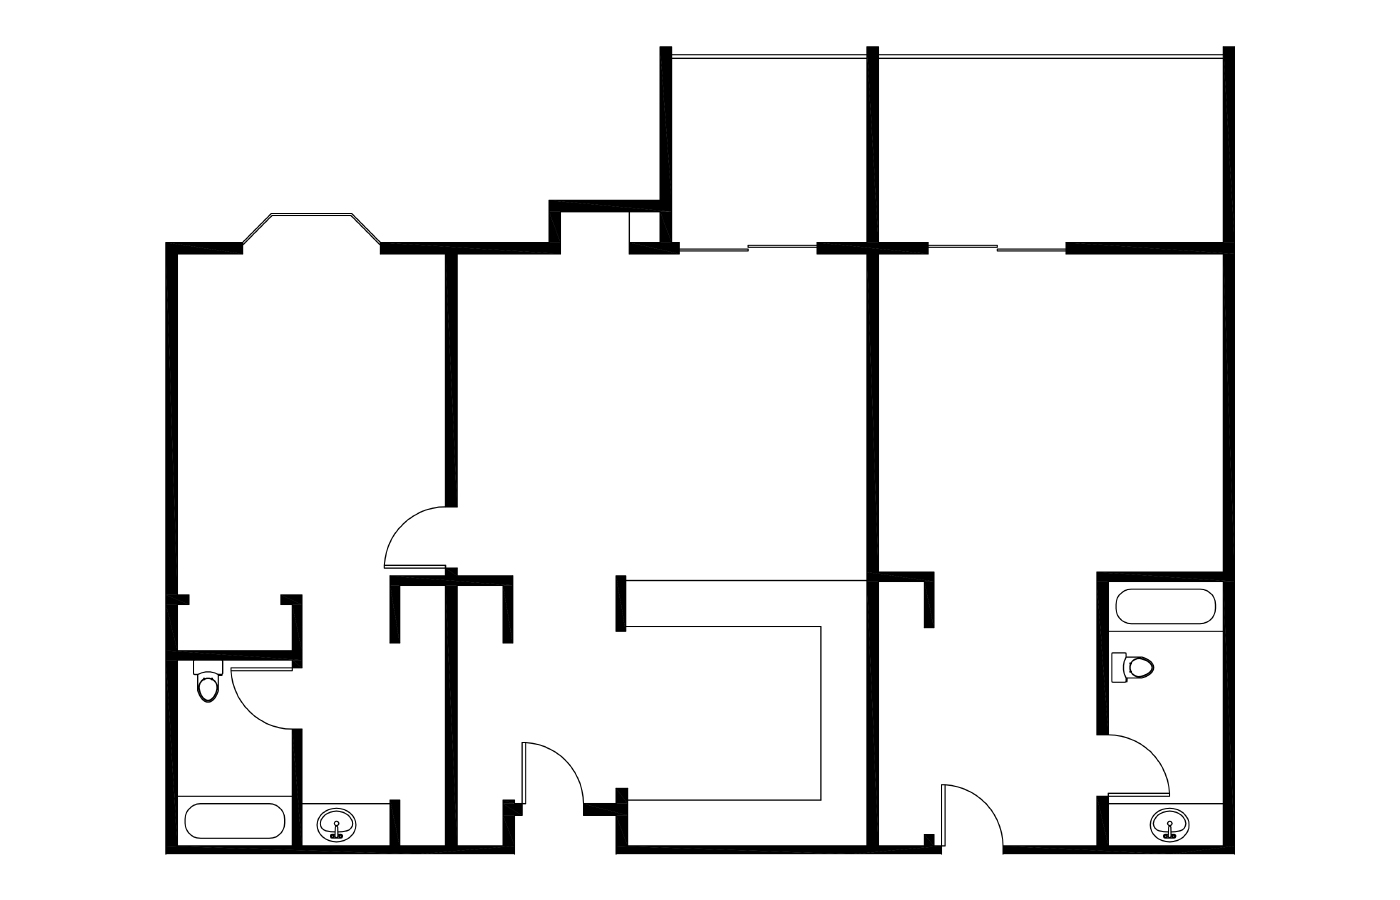 Two-bedroom floorplan